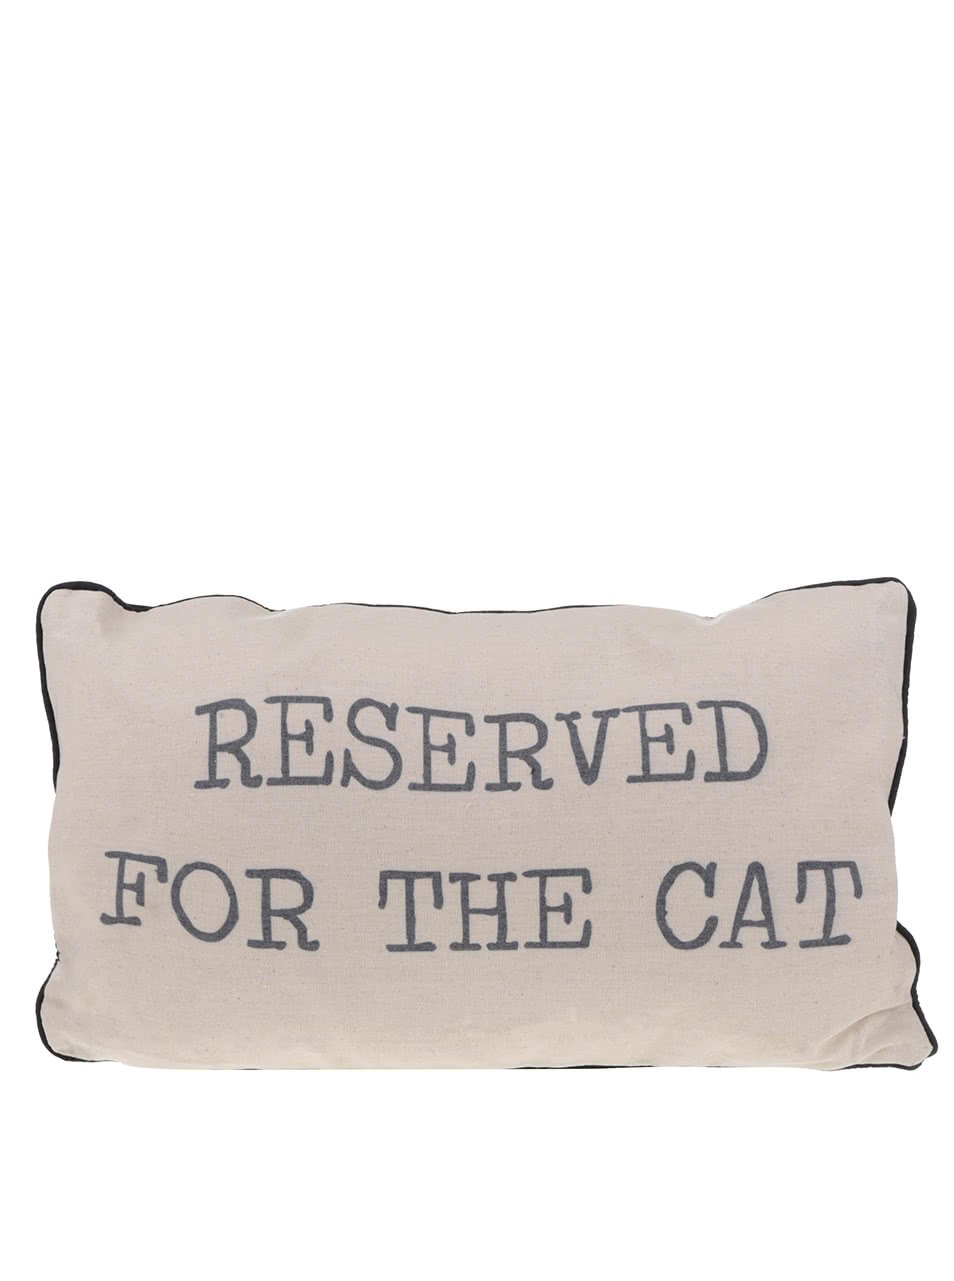 Béžový polštář pro kočku Sass & Belle Reserved for the cat